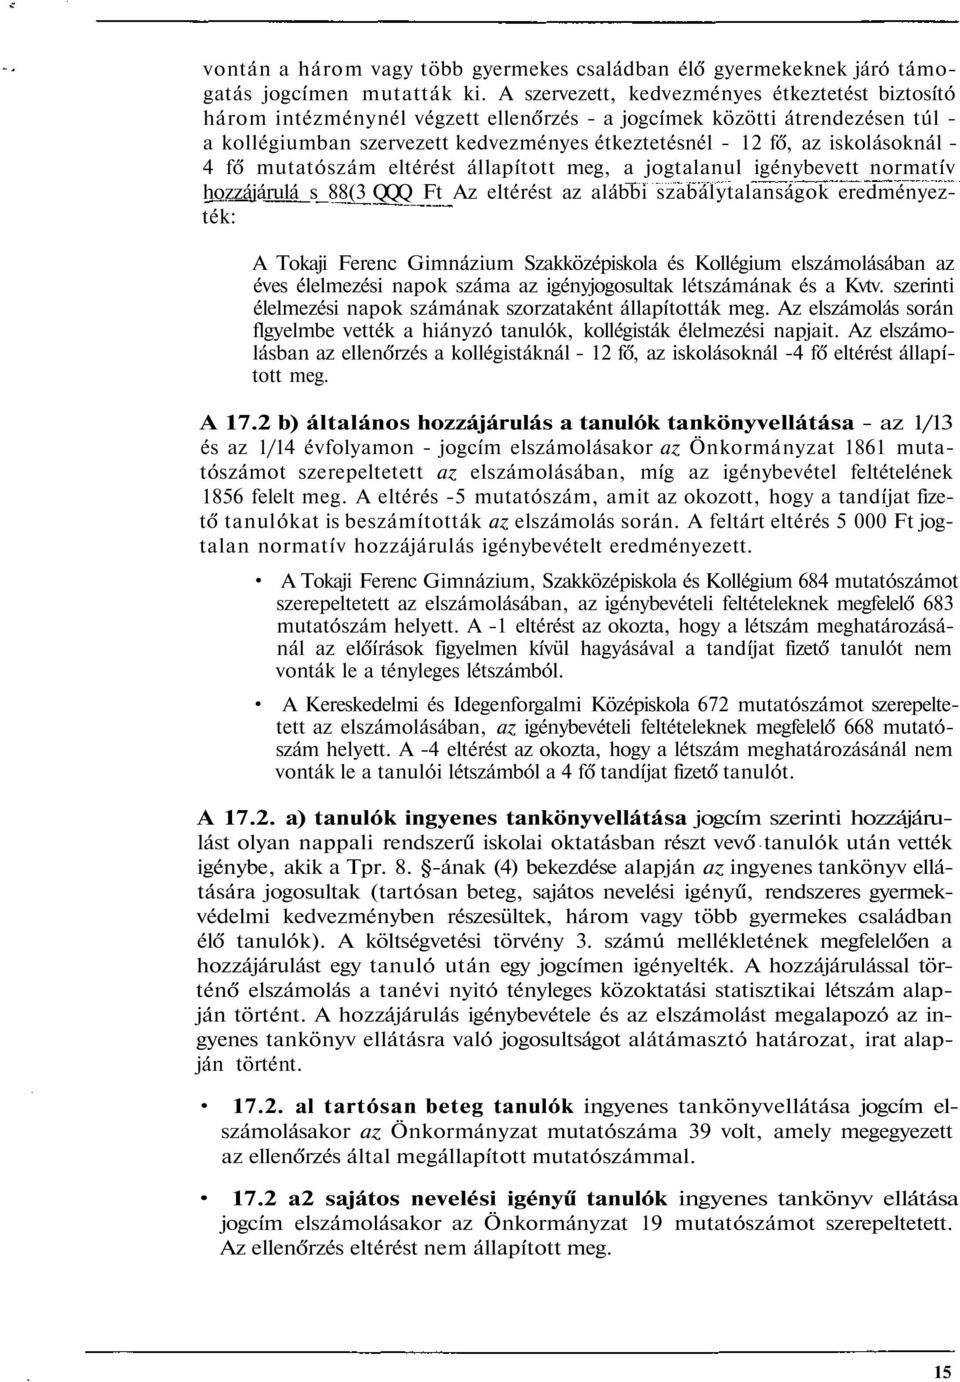 iskolásoknál - 4 fő mutatószám eltérést állapított meg, a jogtalanul igénybevett normatív hozzájárulá_s_88(3 QQQ Ft Az eltérést az alábbi szabálytalanságok eredményezték: A Tokaji Ferenc Gimnázium